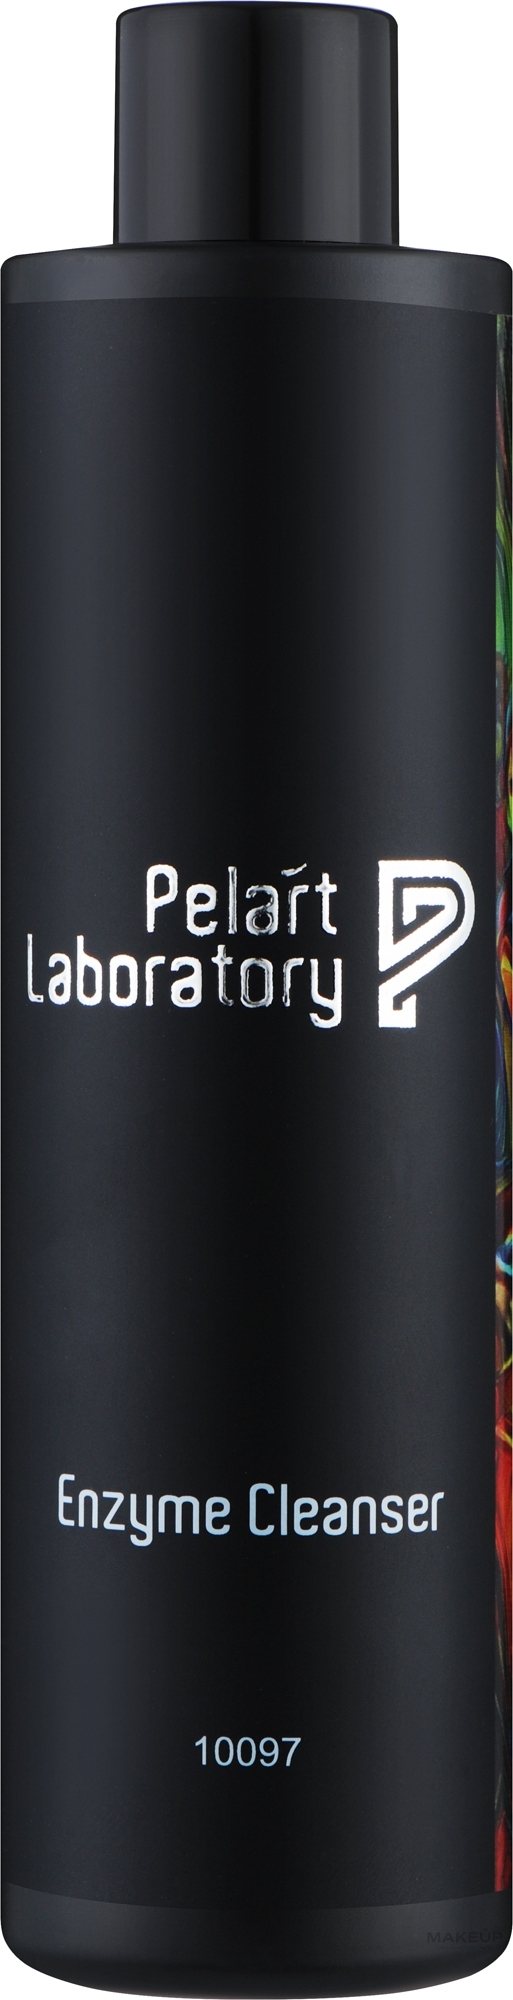 Очищающая ферментная пудра для лица - Pelart Laboratory Enzyme Cleanser — фото 150g